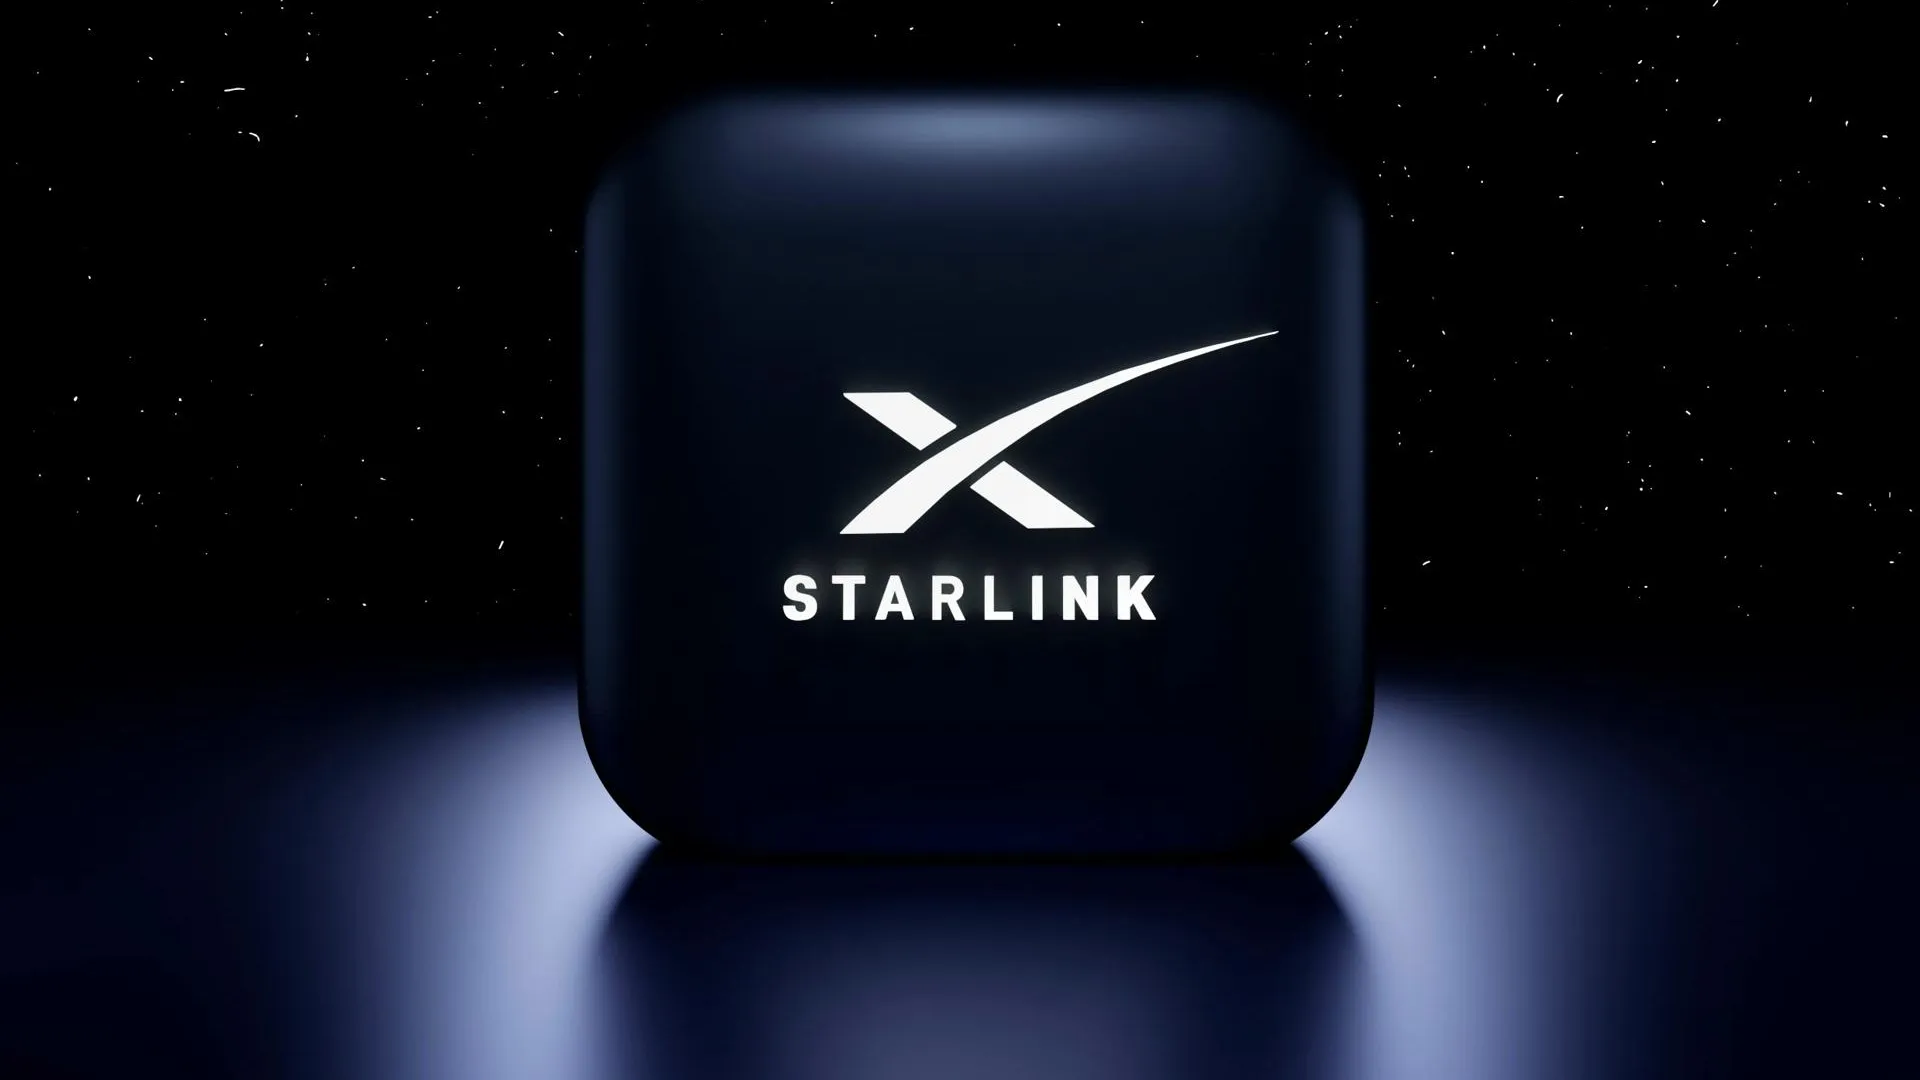 Аналог Starlink от российских производителей прошел первую стадию испытаний